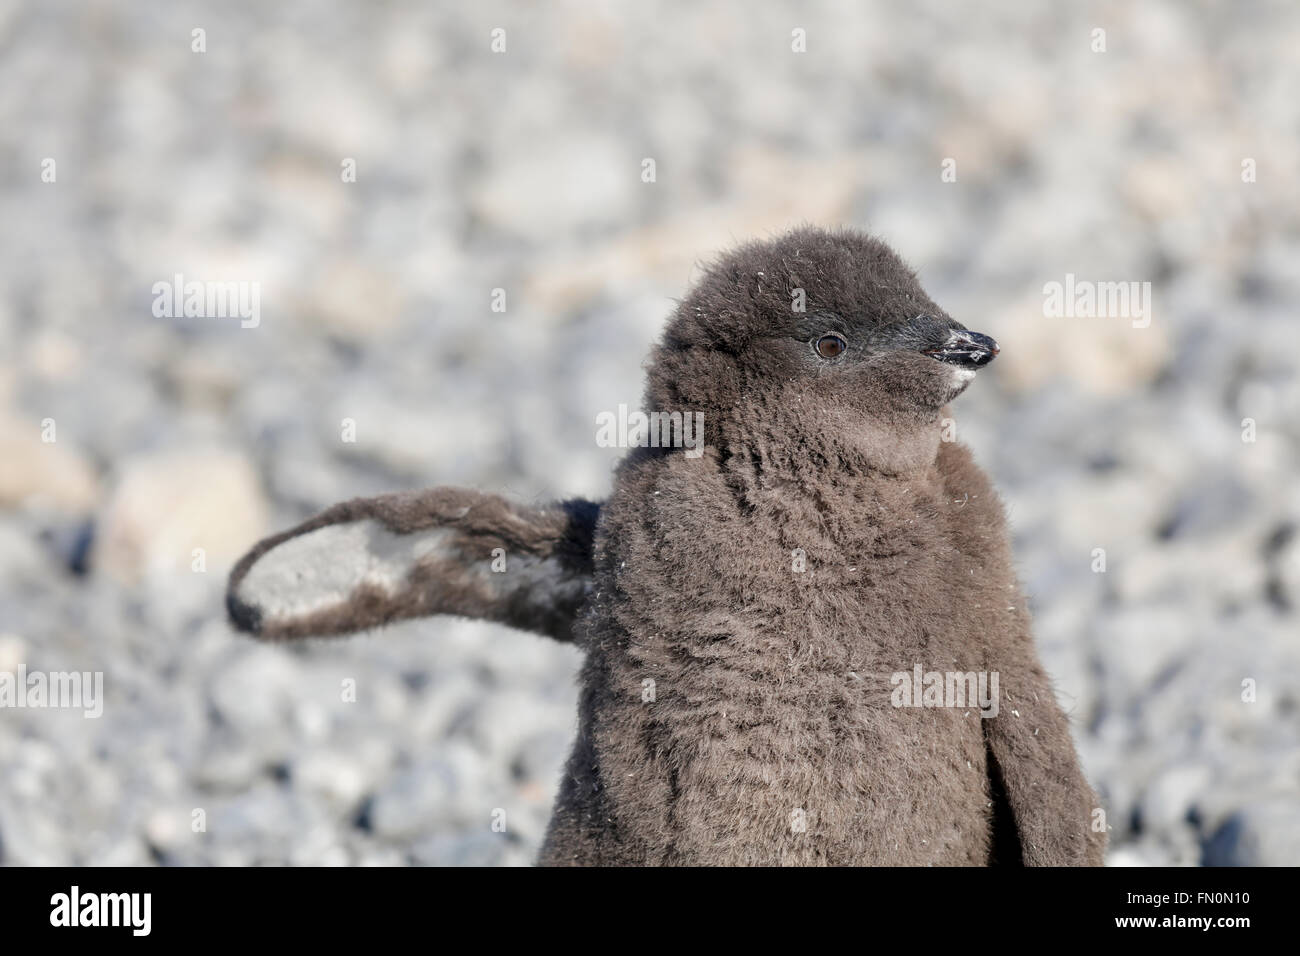 Antarktis, Antarktische Halbinsel, Brown Bluff. Adelie Pinguin, Küken Stockfoto